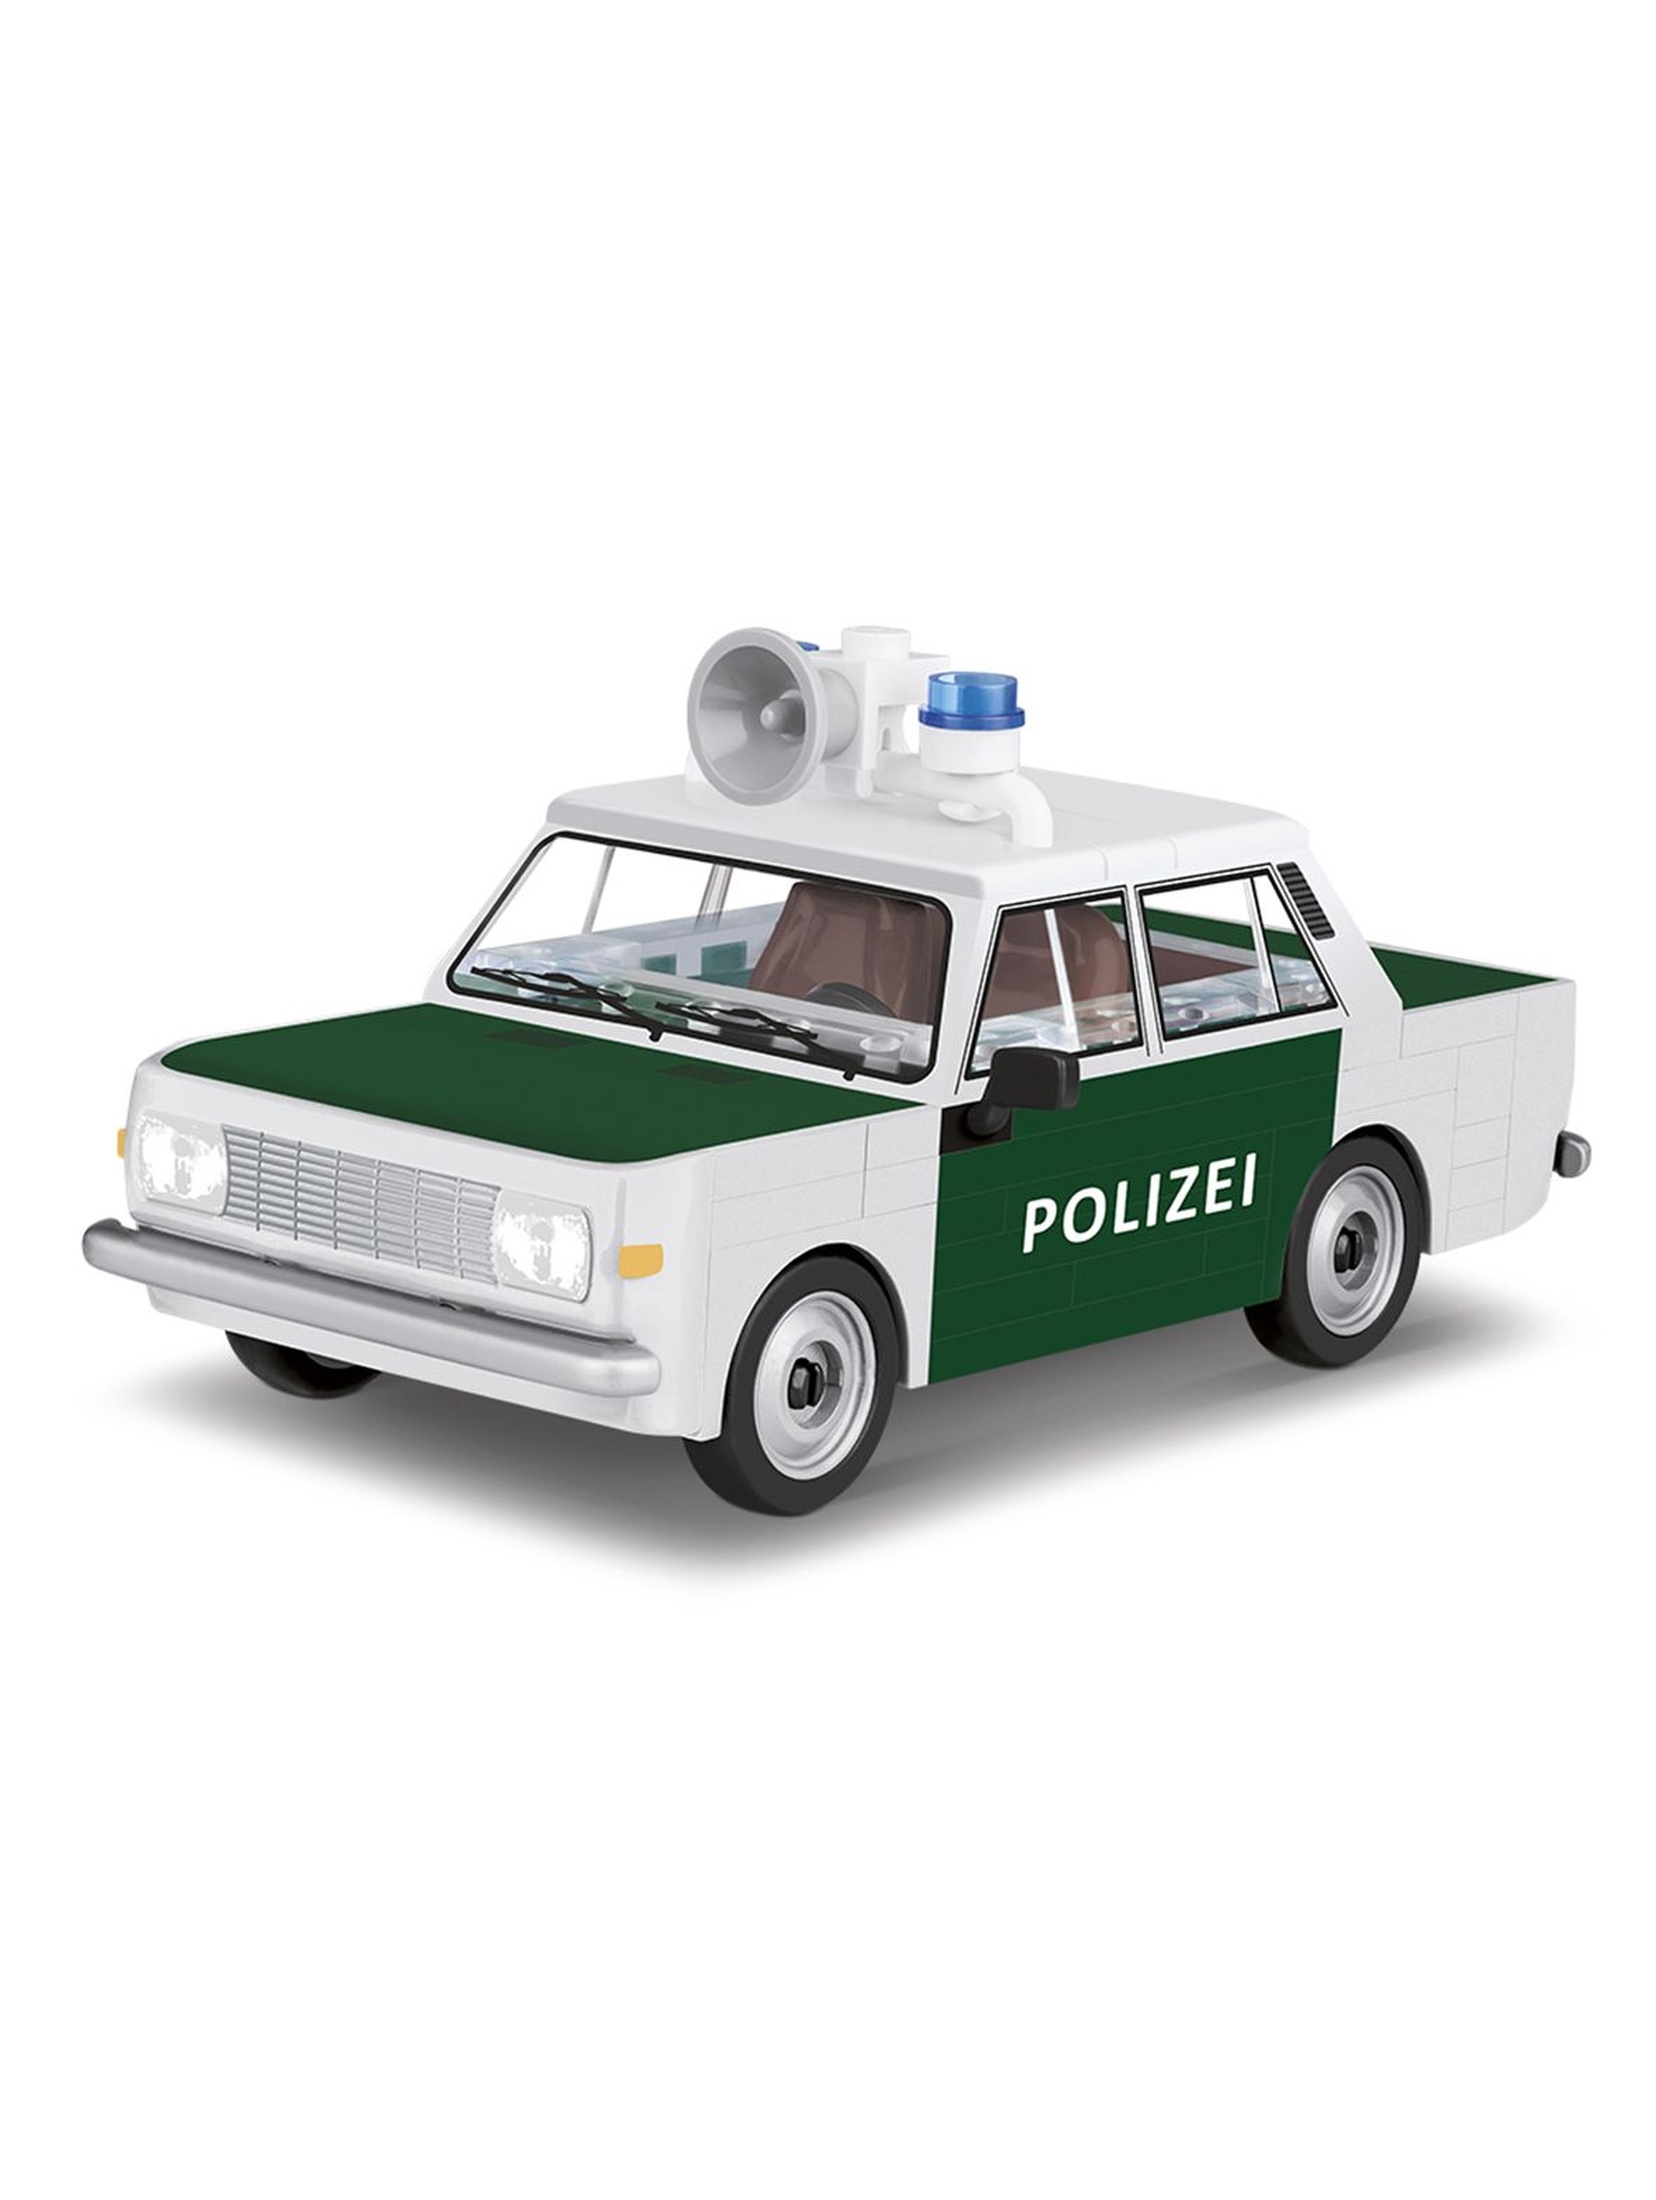 Kocki COBI 24558 Cars Wartburg 353 Polizei - 84 elementy wiek 5+